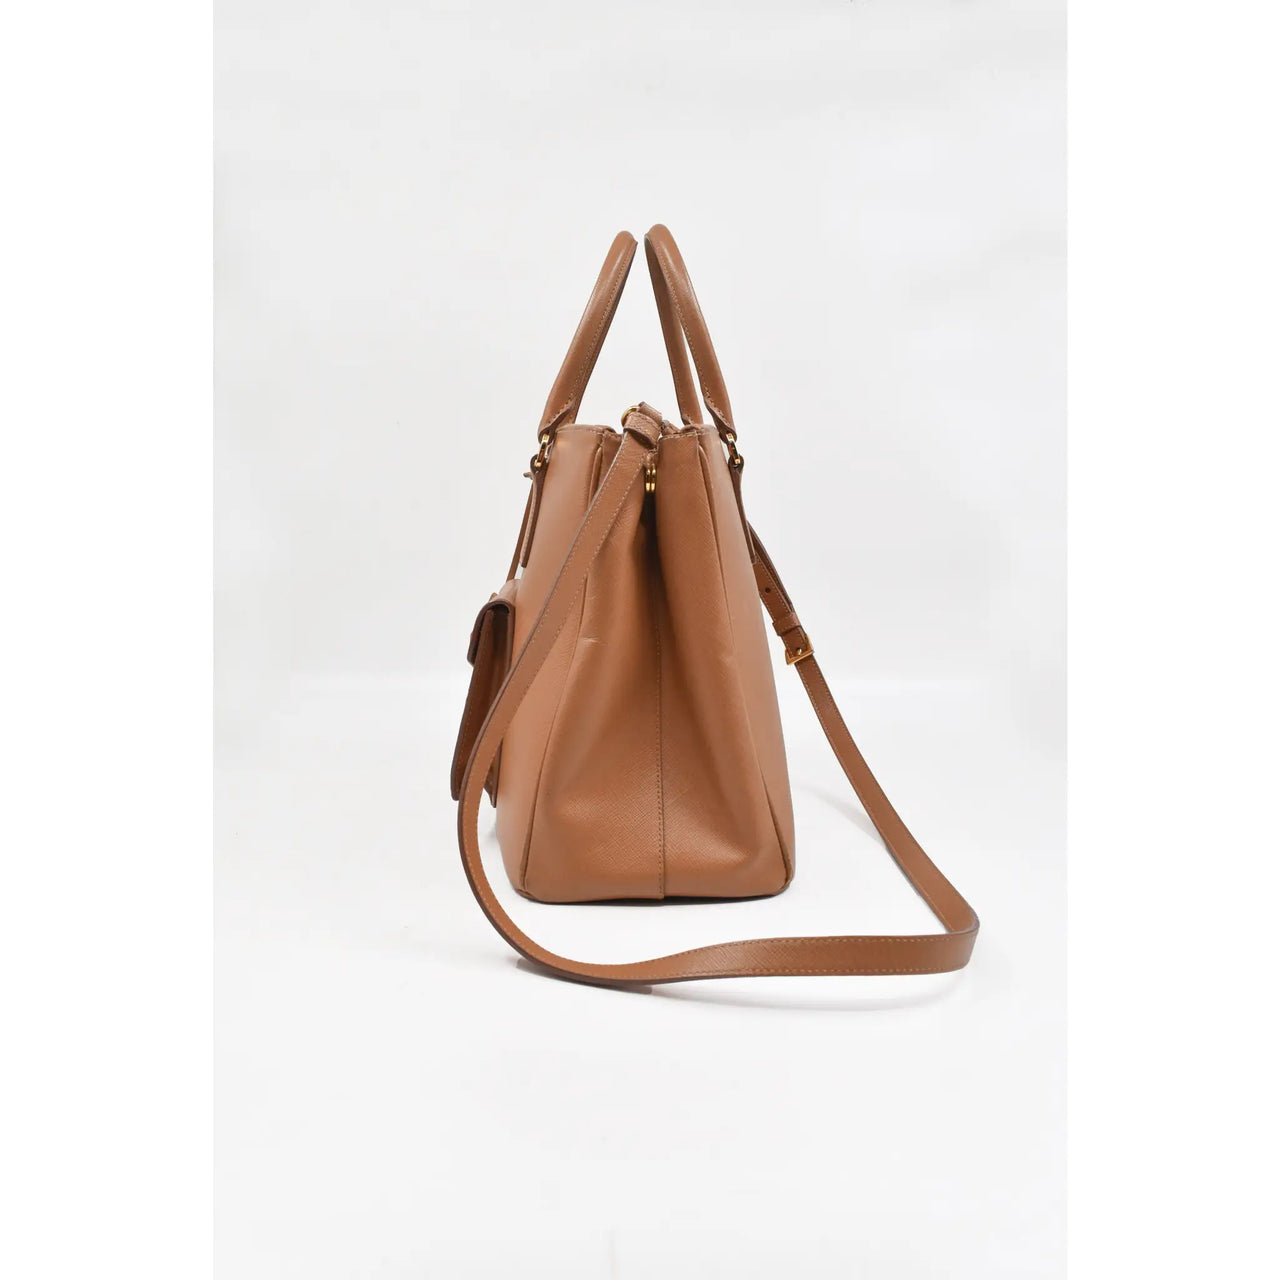 Prada Women's Saffiano Leather Handbag